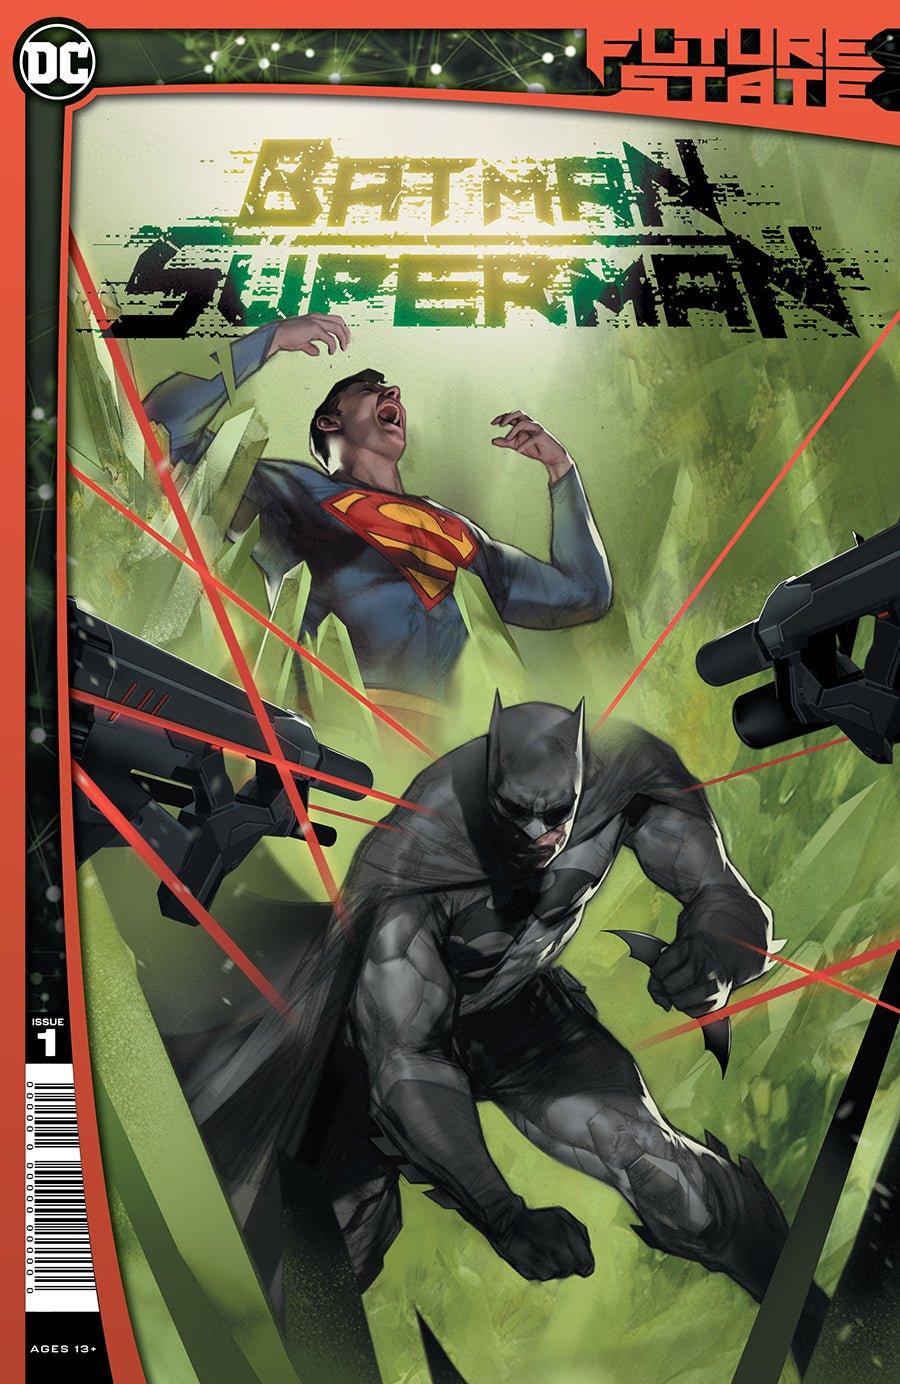 FUTURE STATE BATMAN SUPERMAN #1 (OF 2) CVR A BEN OLIVER (SHIPS 01-26-21) - PCKComics.com